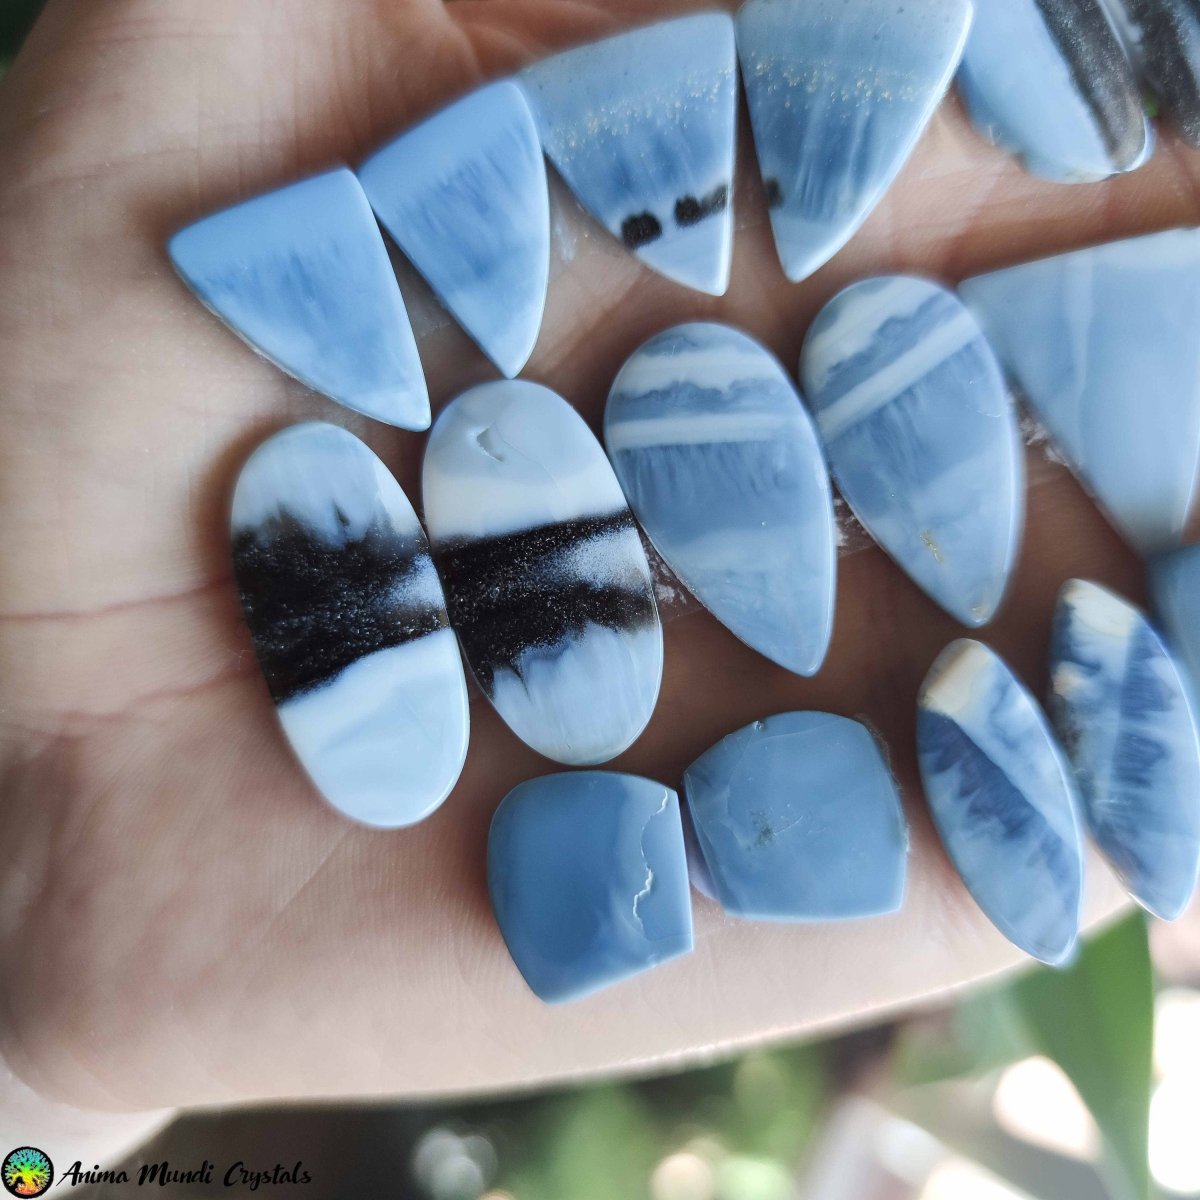 Blue Owyhee Opal Cabochon Pairs - Anima Mundi Crystals